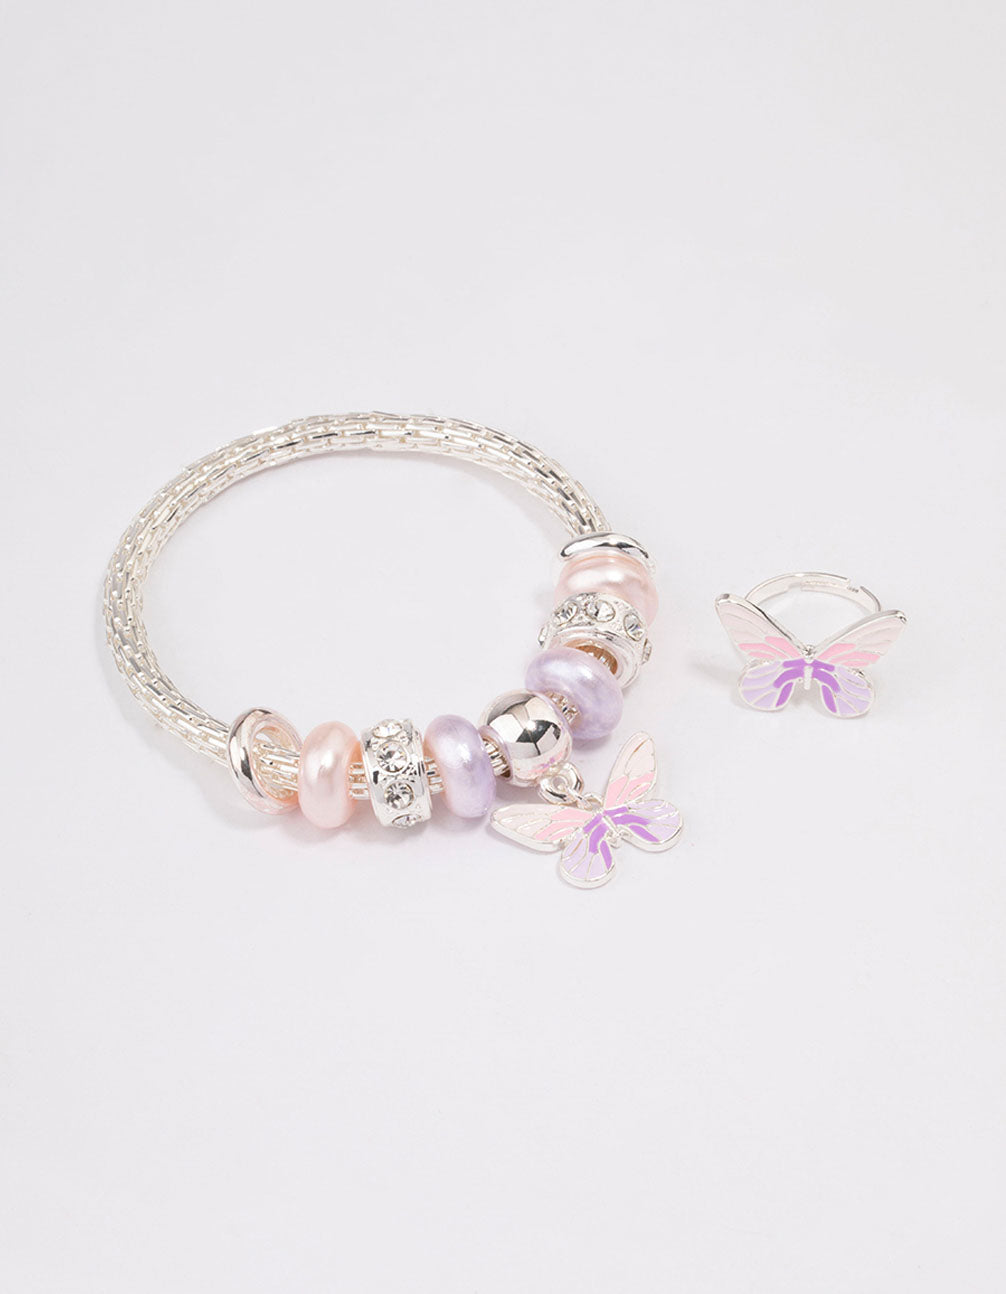 Pandora Bracelet With Pink Kitty and Friends Themed Charms -   Pandora  bracelet charms ideas, Pandora bracelet, Girly bracelets